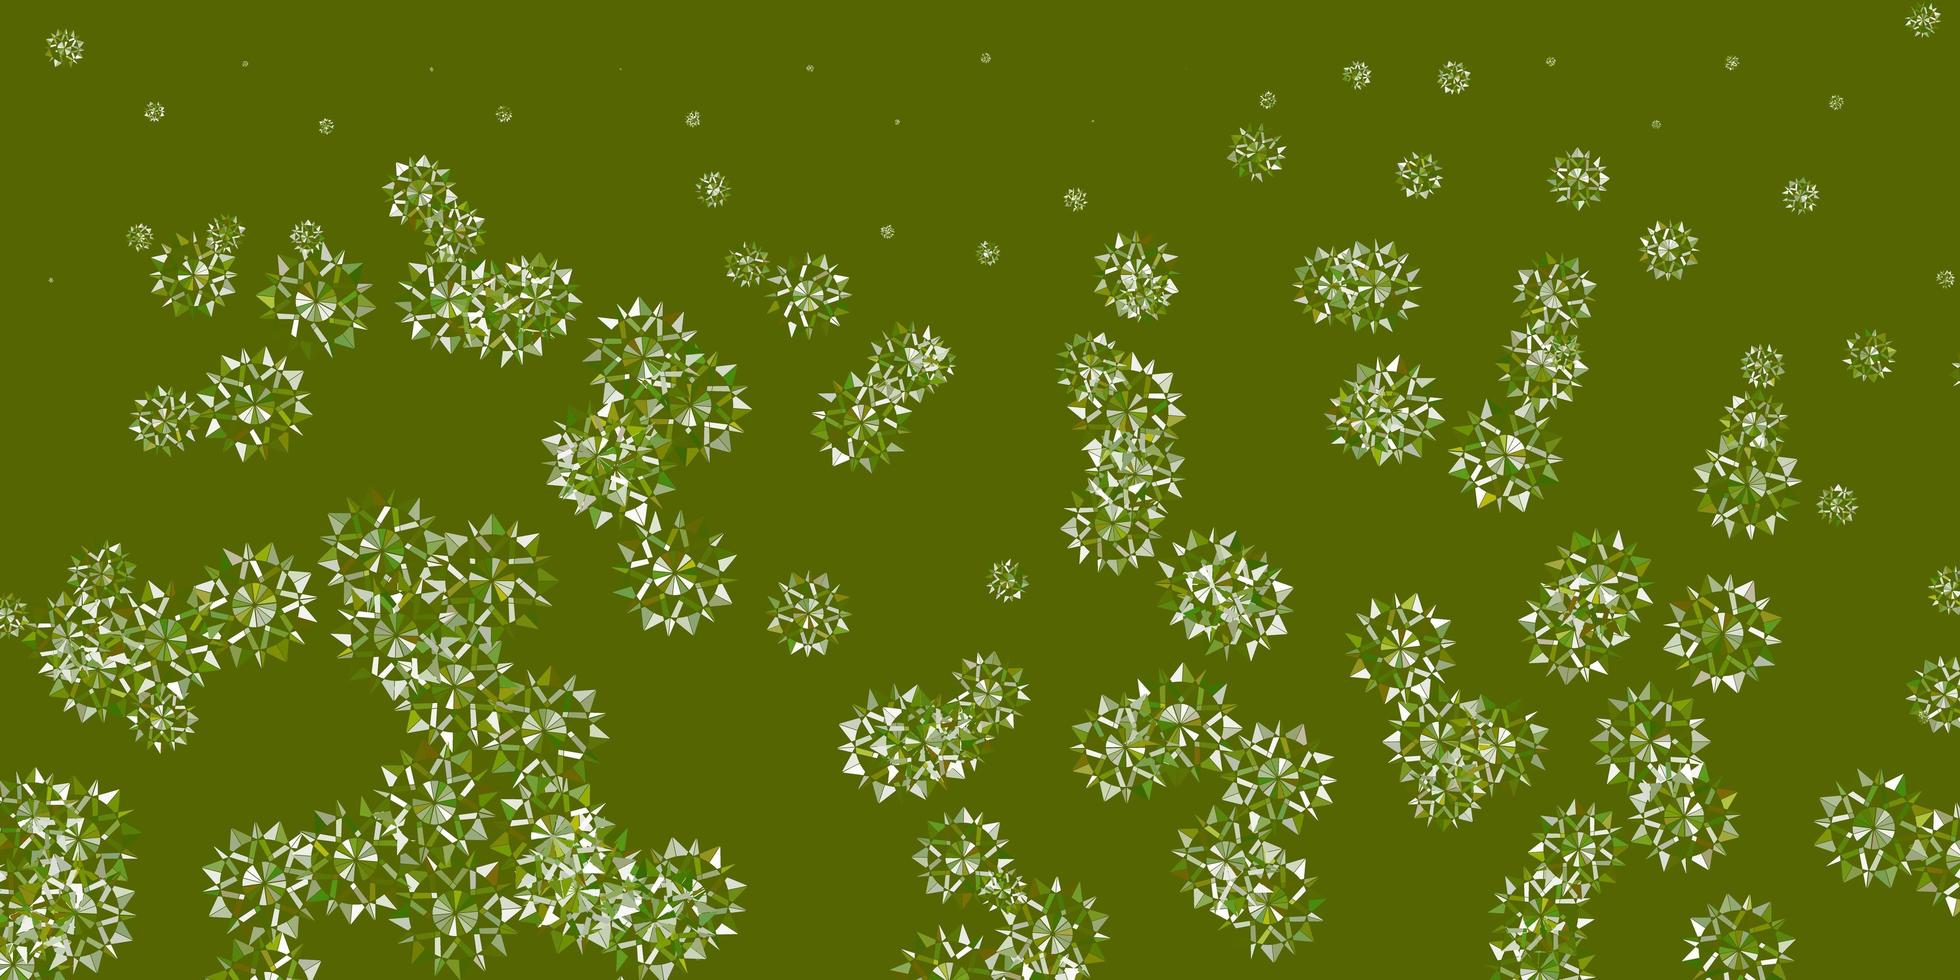 layout de vetor verde claro com flocos de neve lindos.